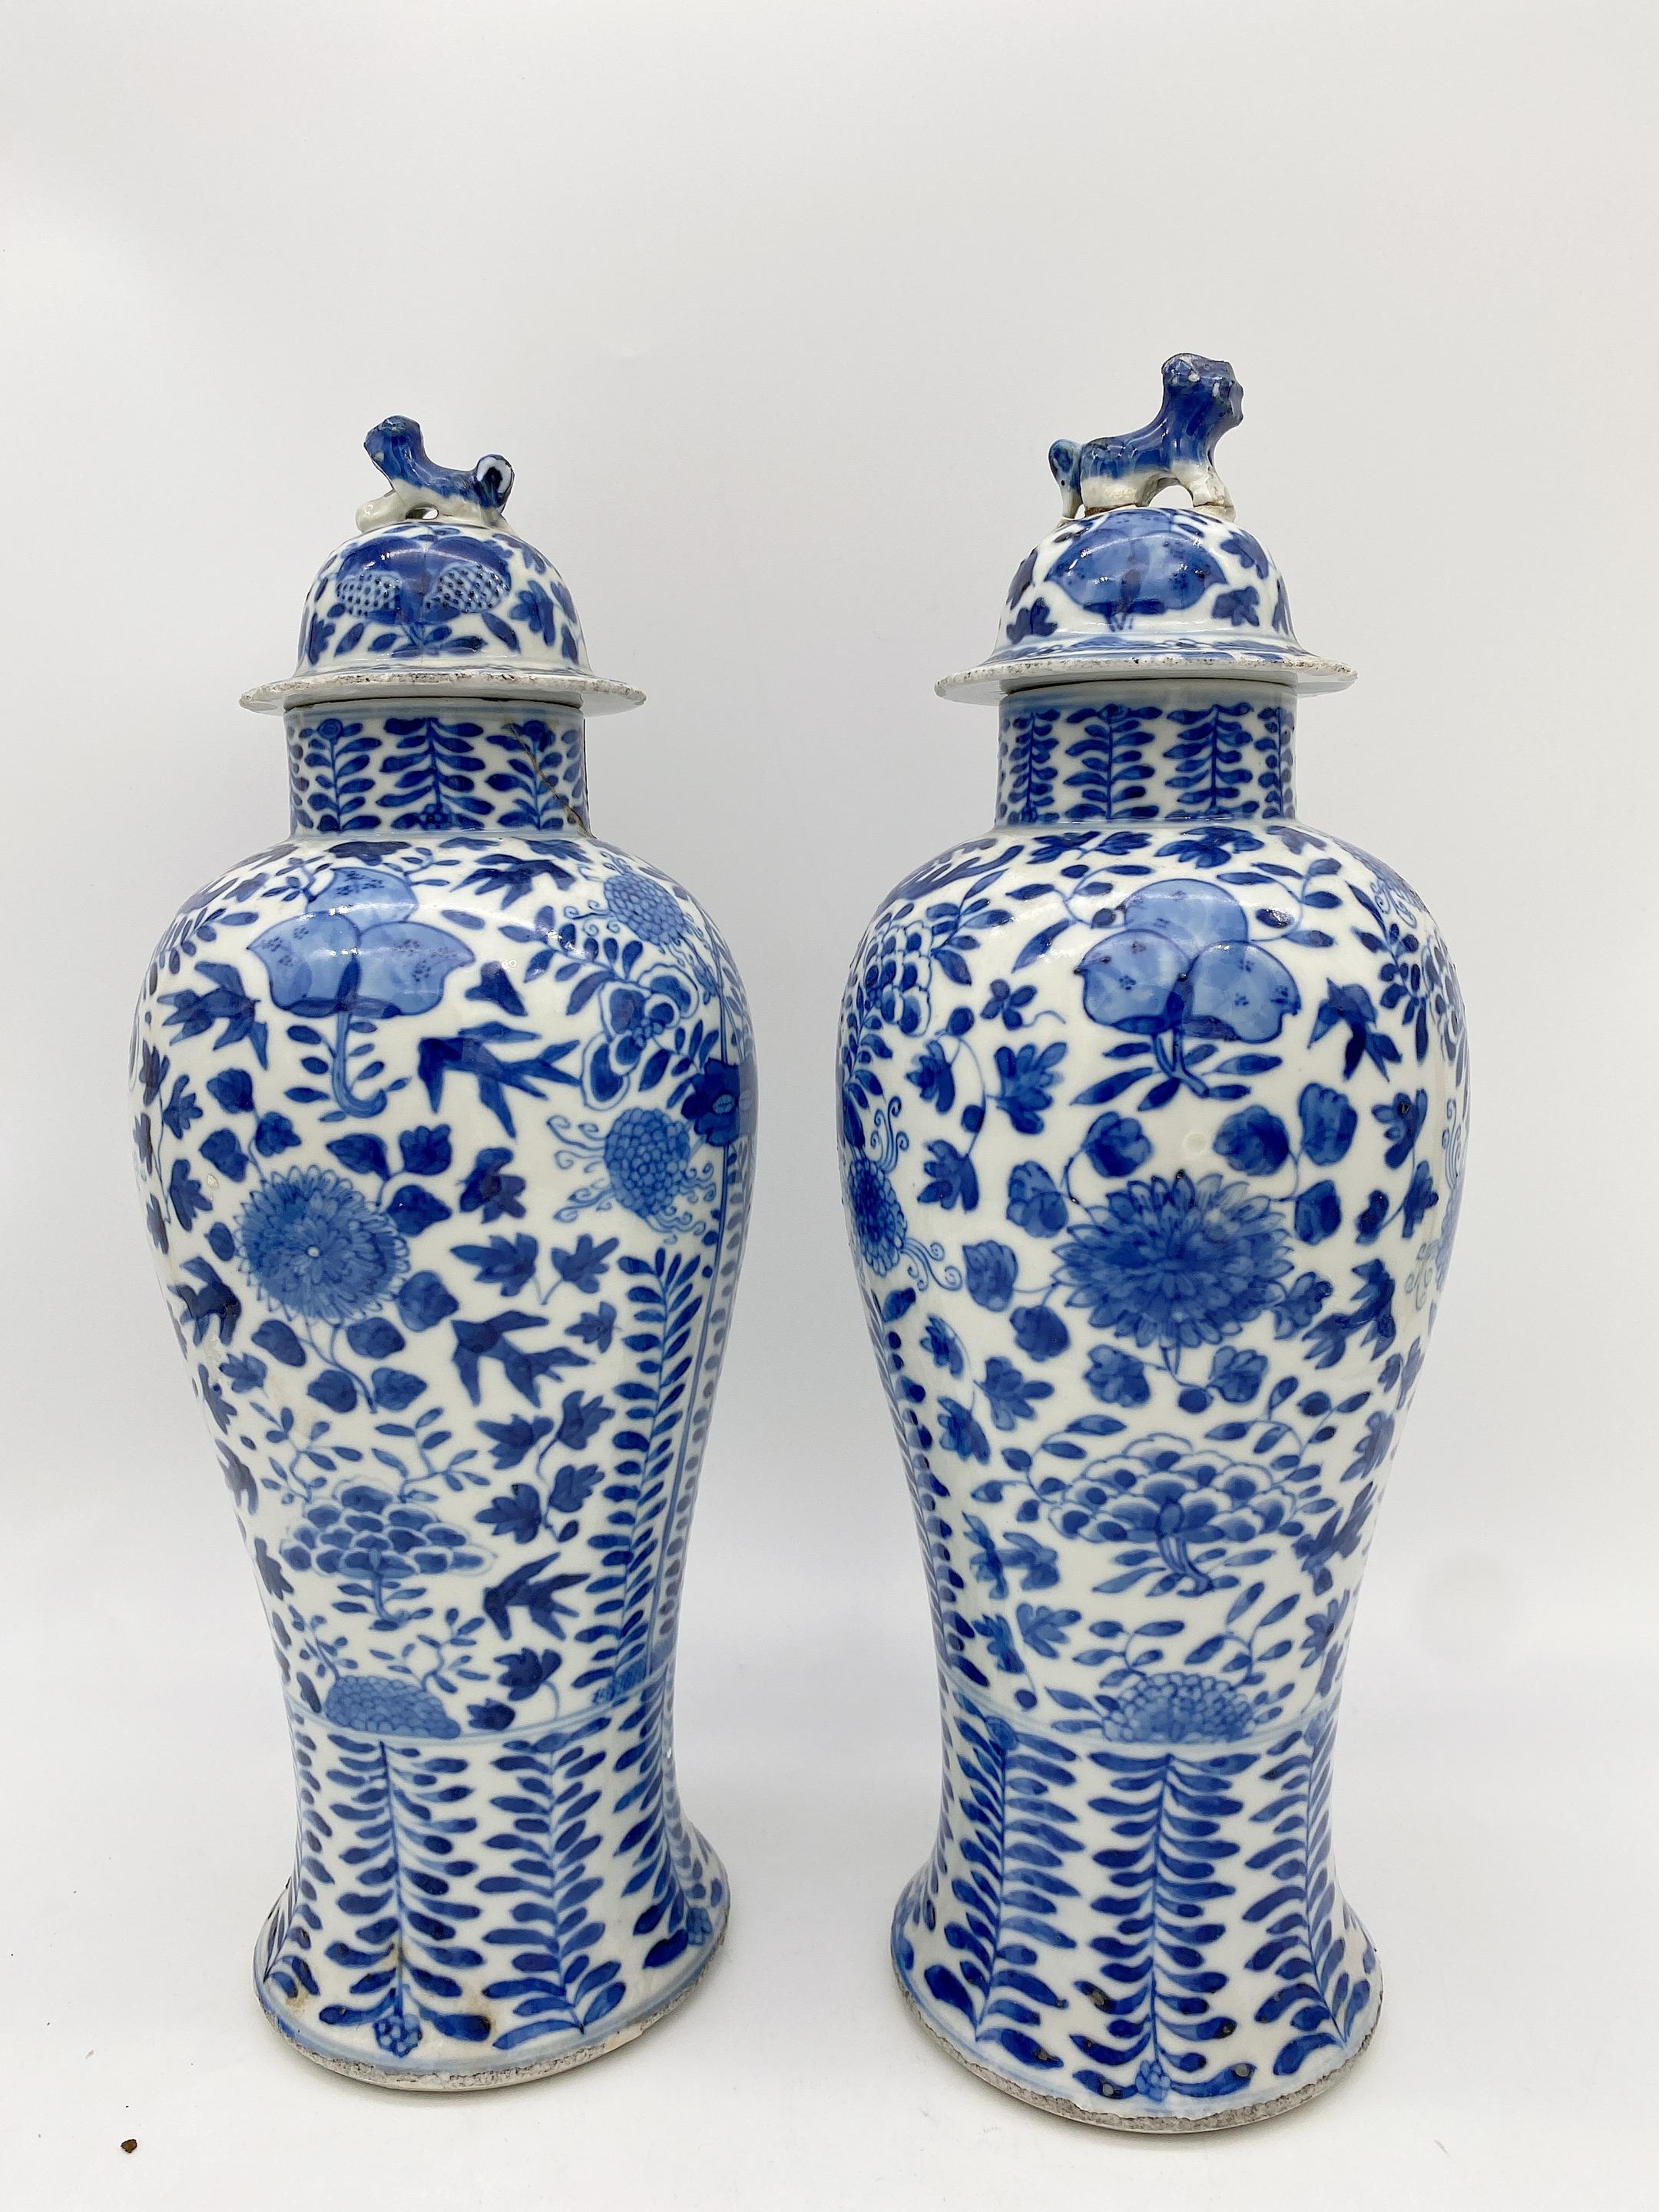 Paire de jarres et couvercles en porcelaine bleue et blanche de la dynastie Qing, 2 des 5 ustensiles sacrificiels, les couvercles avec des lions en forme de fleurons, décorés avec des fruits et des branches, les jarres sont endommagées au niveau du